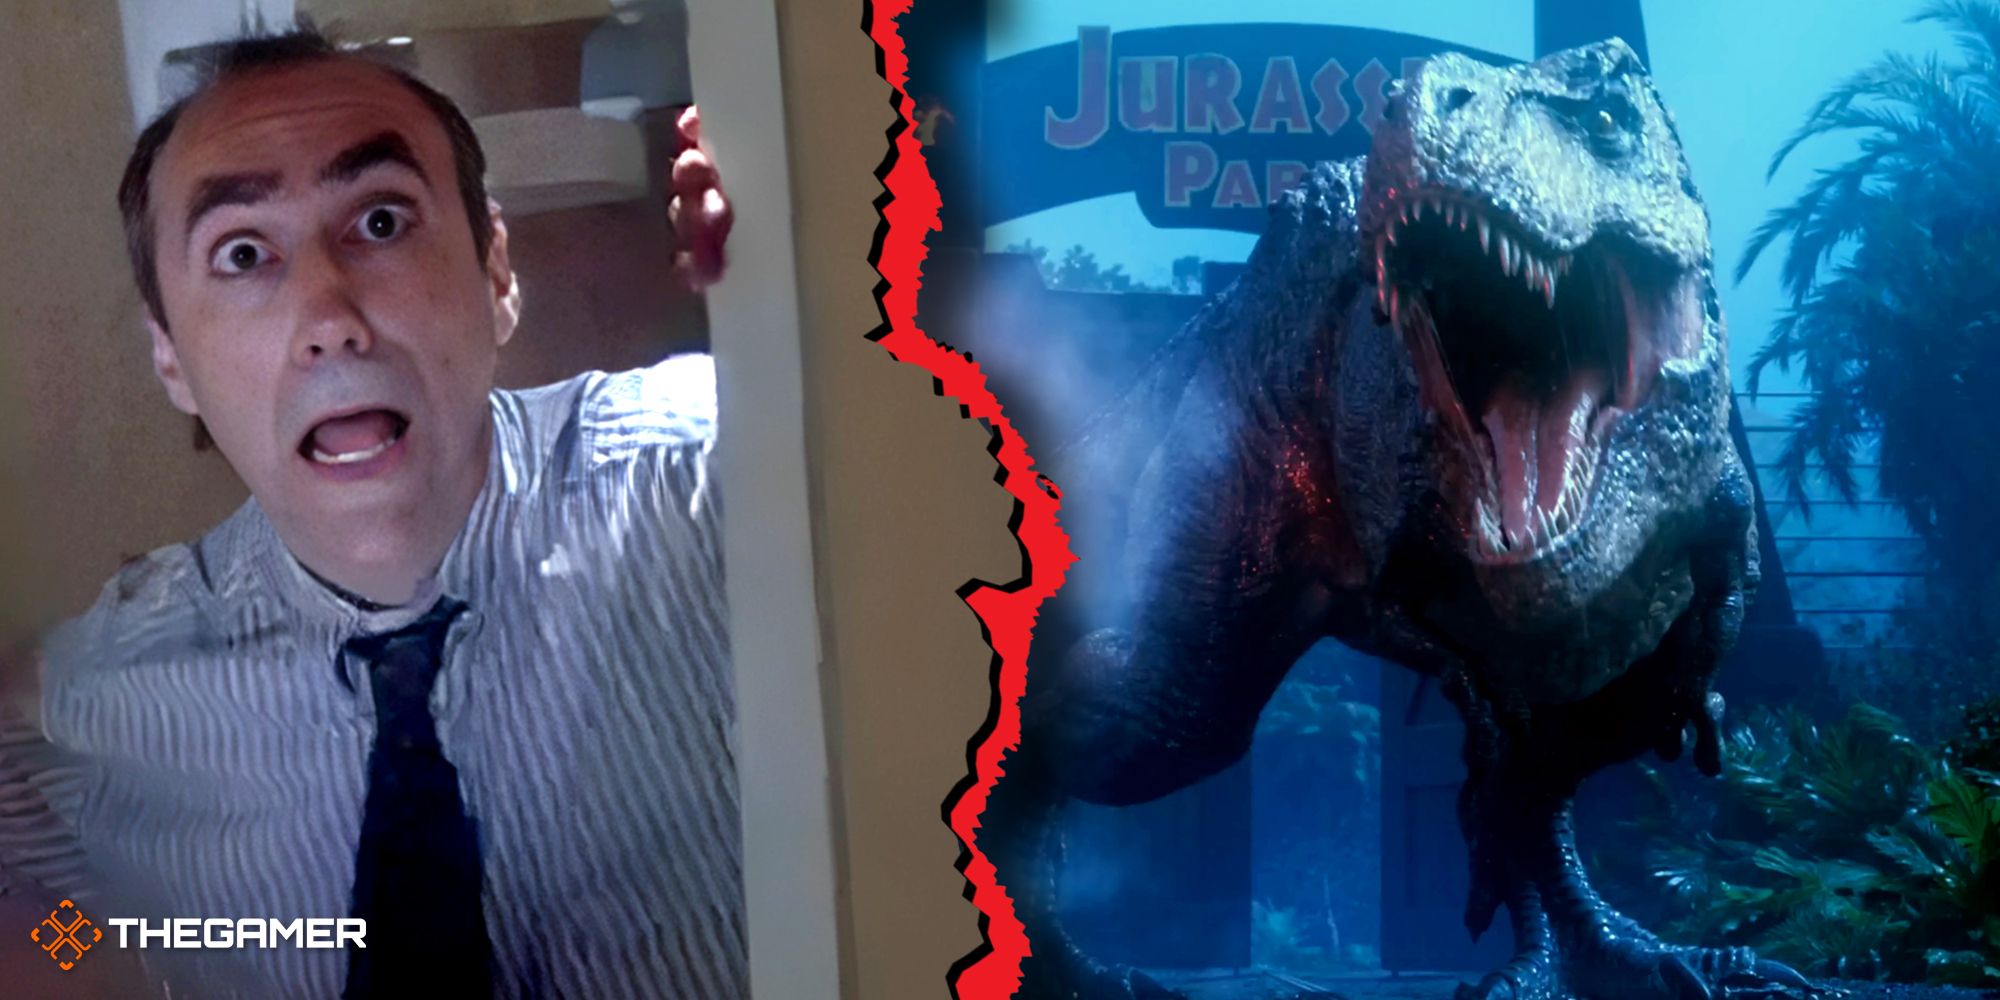 Der Anwalt aus Jurassic Park und der brüllende T-Rex aus Jurassic Park Survival